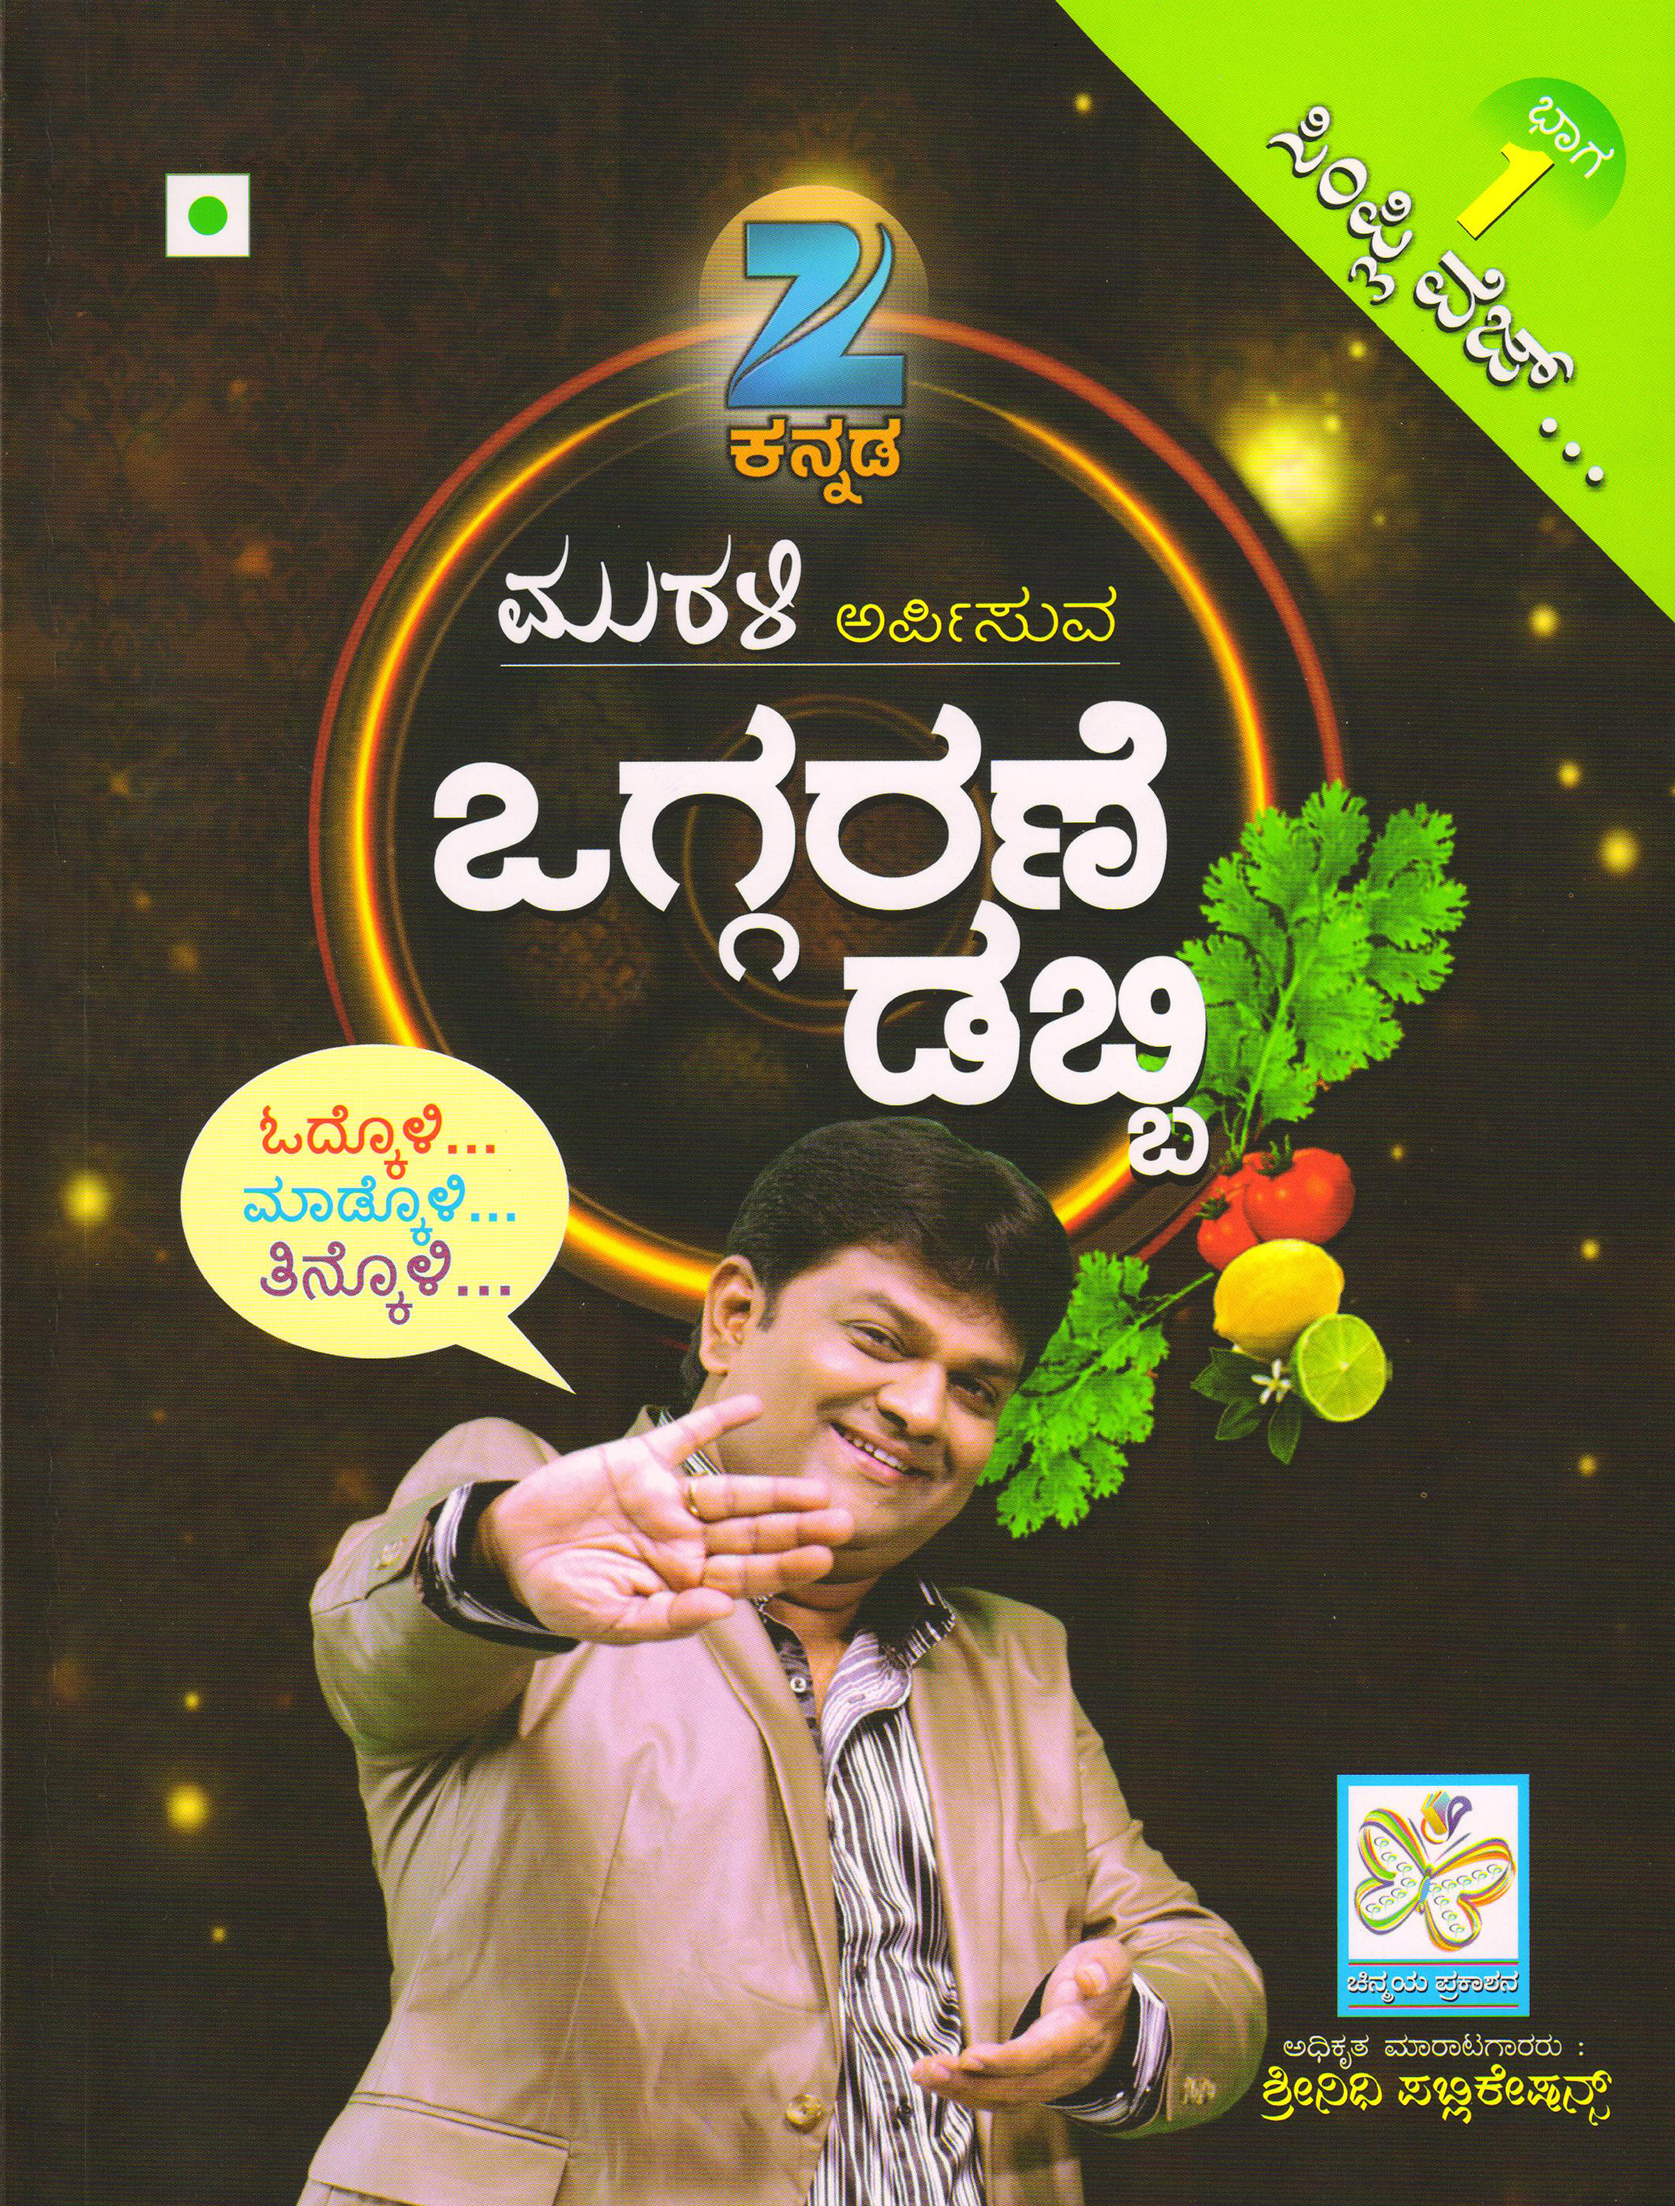 ಒಗ್ಗರಣೆ ಡಬ್ಬಿ ಭಾಗ - 1 (ಸಿಂಪ್ಲಿ ವೆಜ್) (ಅಡಿಗೆ ಪುಸ್ತಕ)|Oggarane Dabbi Bhaga - 1 (Simply Veg) Cookery Book